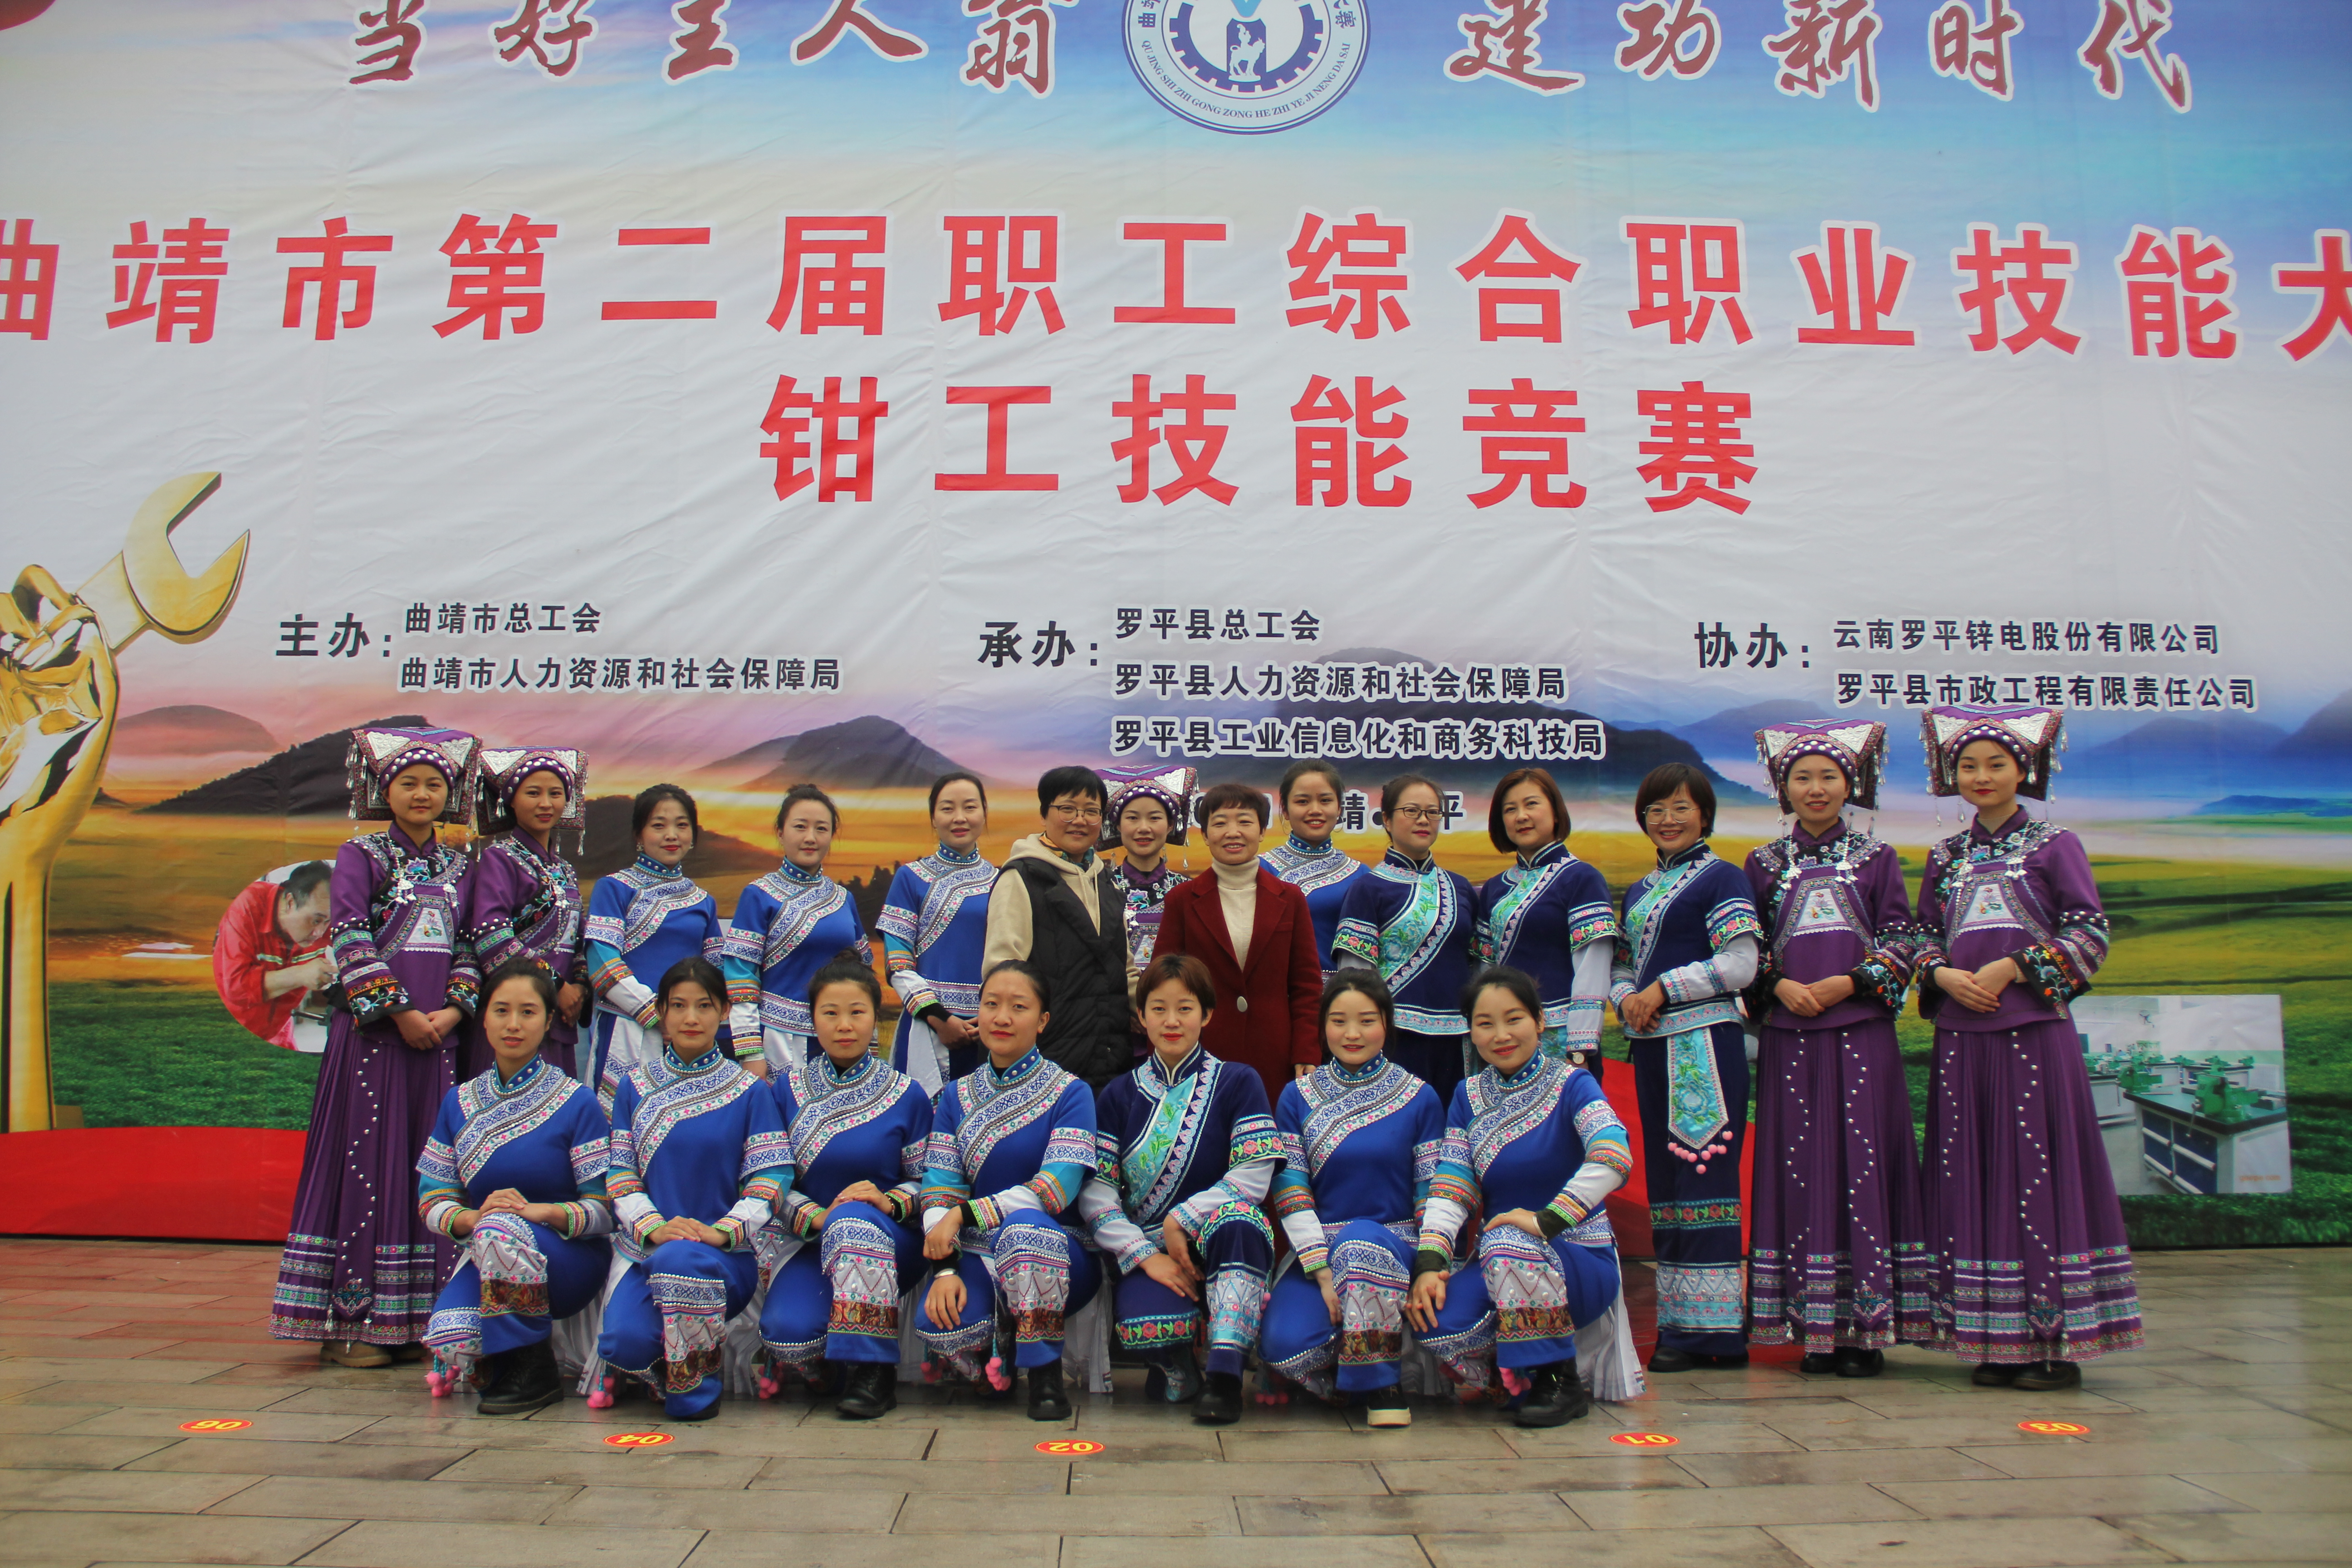 公司参与协办在罗平举办的“曲靖市第二届职工综合职业技能大赛钳工技能竞赛”